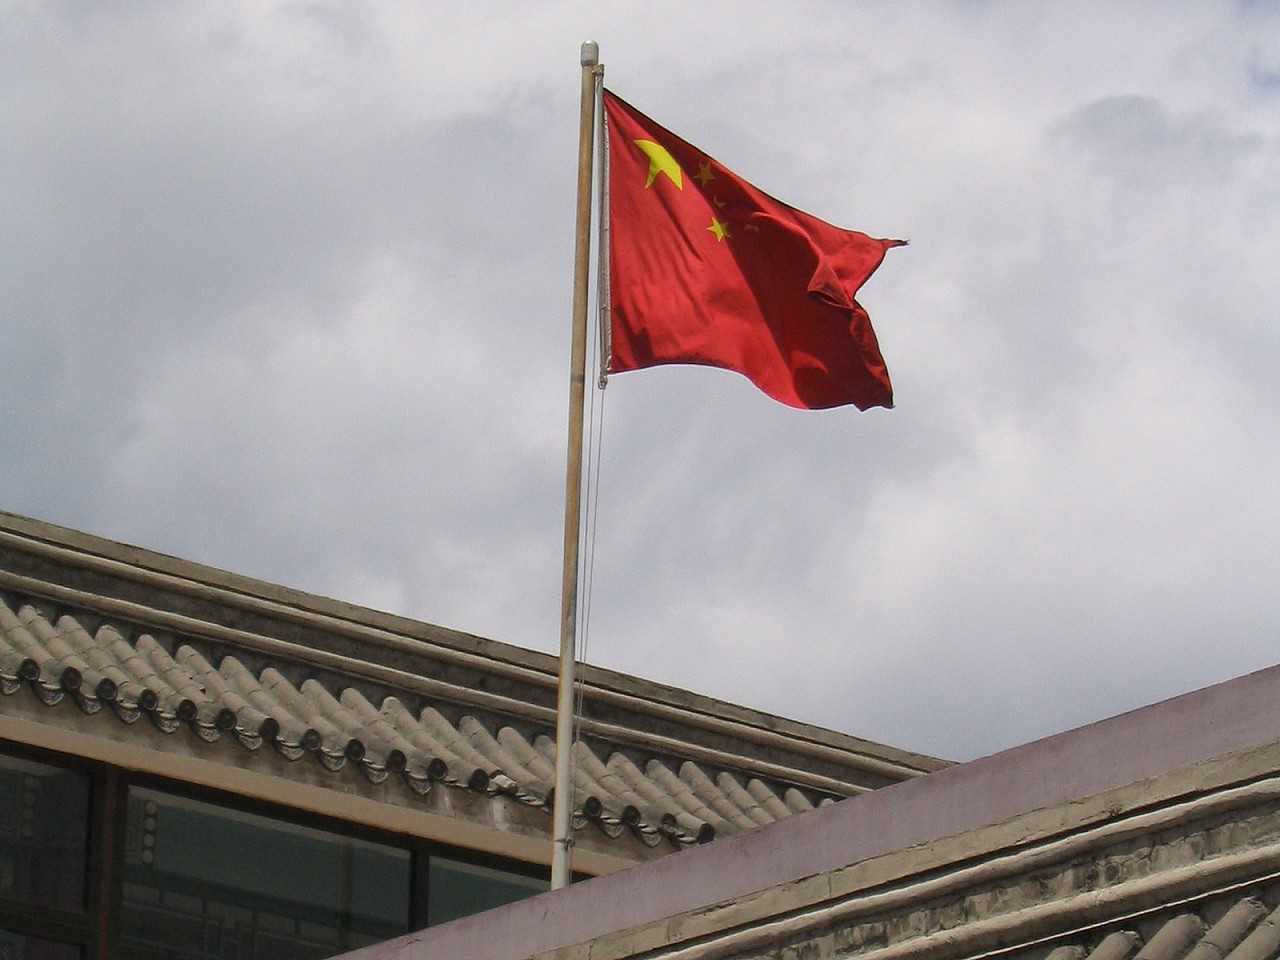 Bandeira China